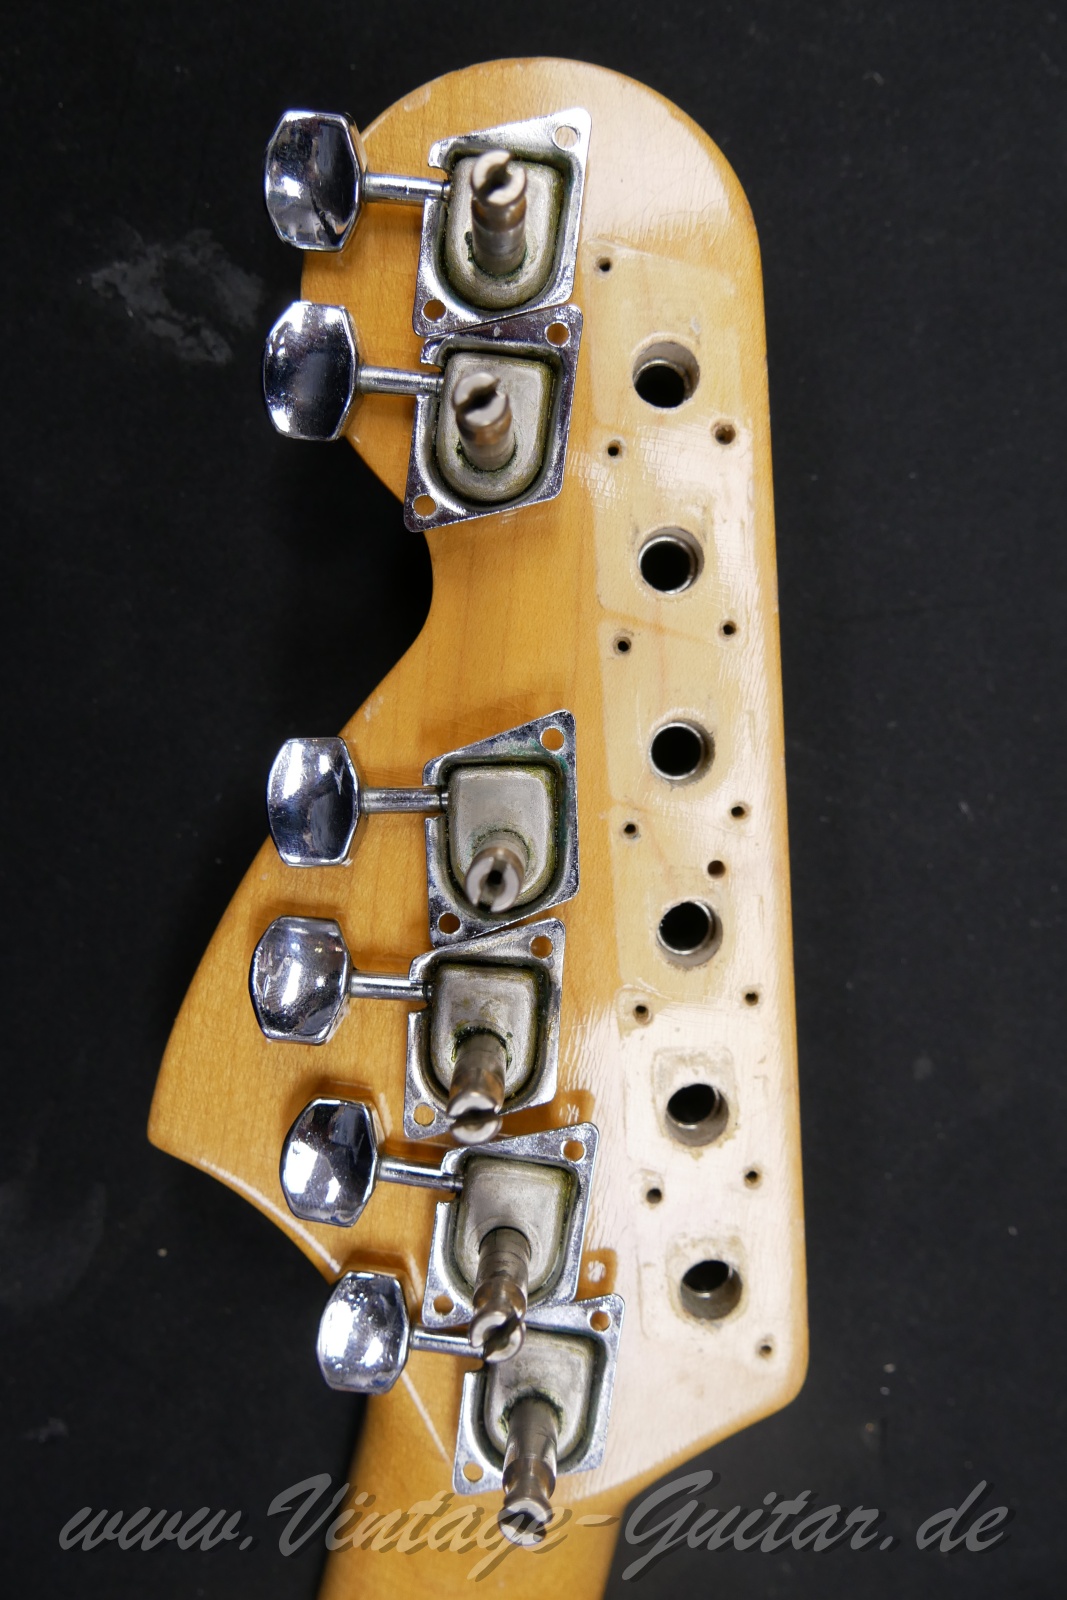 Fender_Stratocaster_1969_sunburst_USA-015.jpg